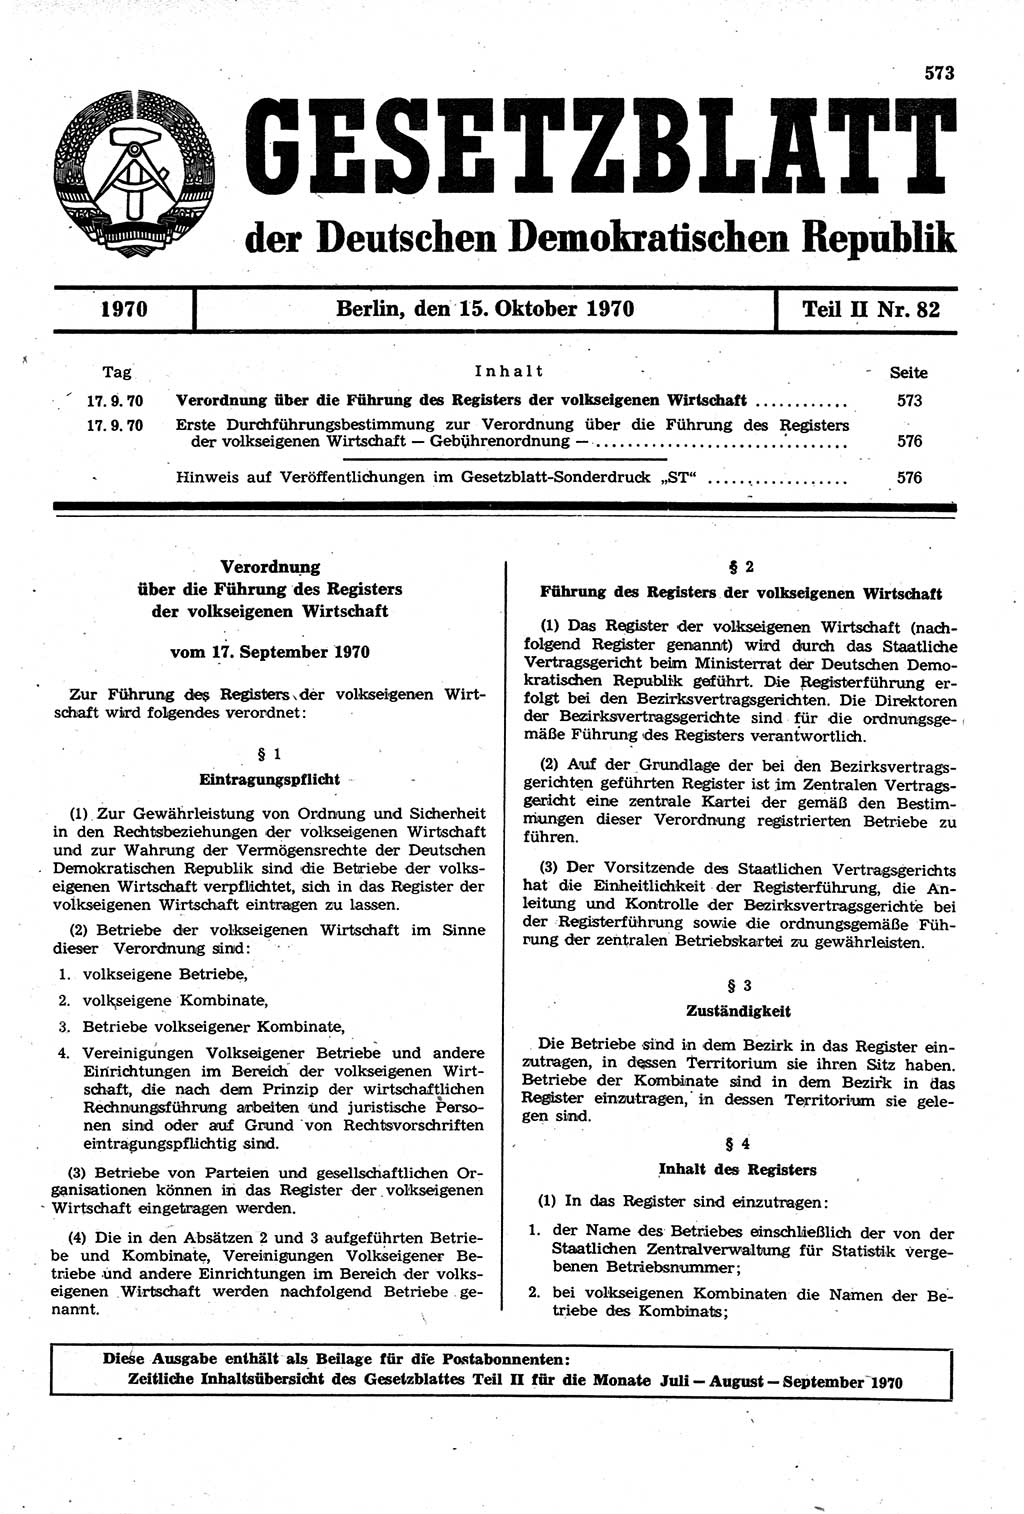 Gesetzblatt (GBl.) der Deutschen Demokratischen Republik (DDR) Teil ⅠⅠ 1970, Seite 573 (GBl. DDR ⅠⅠ 1970, S. 573)